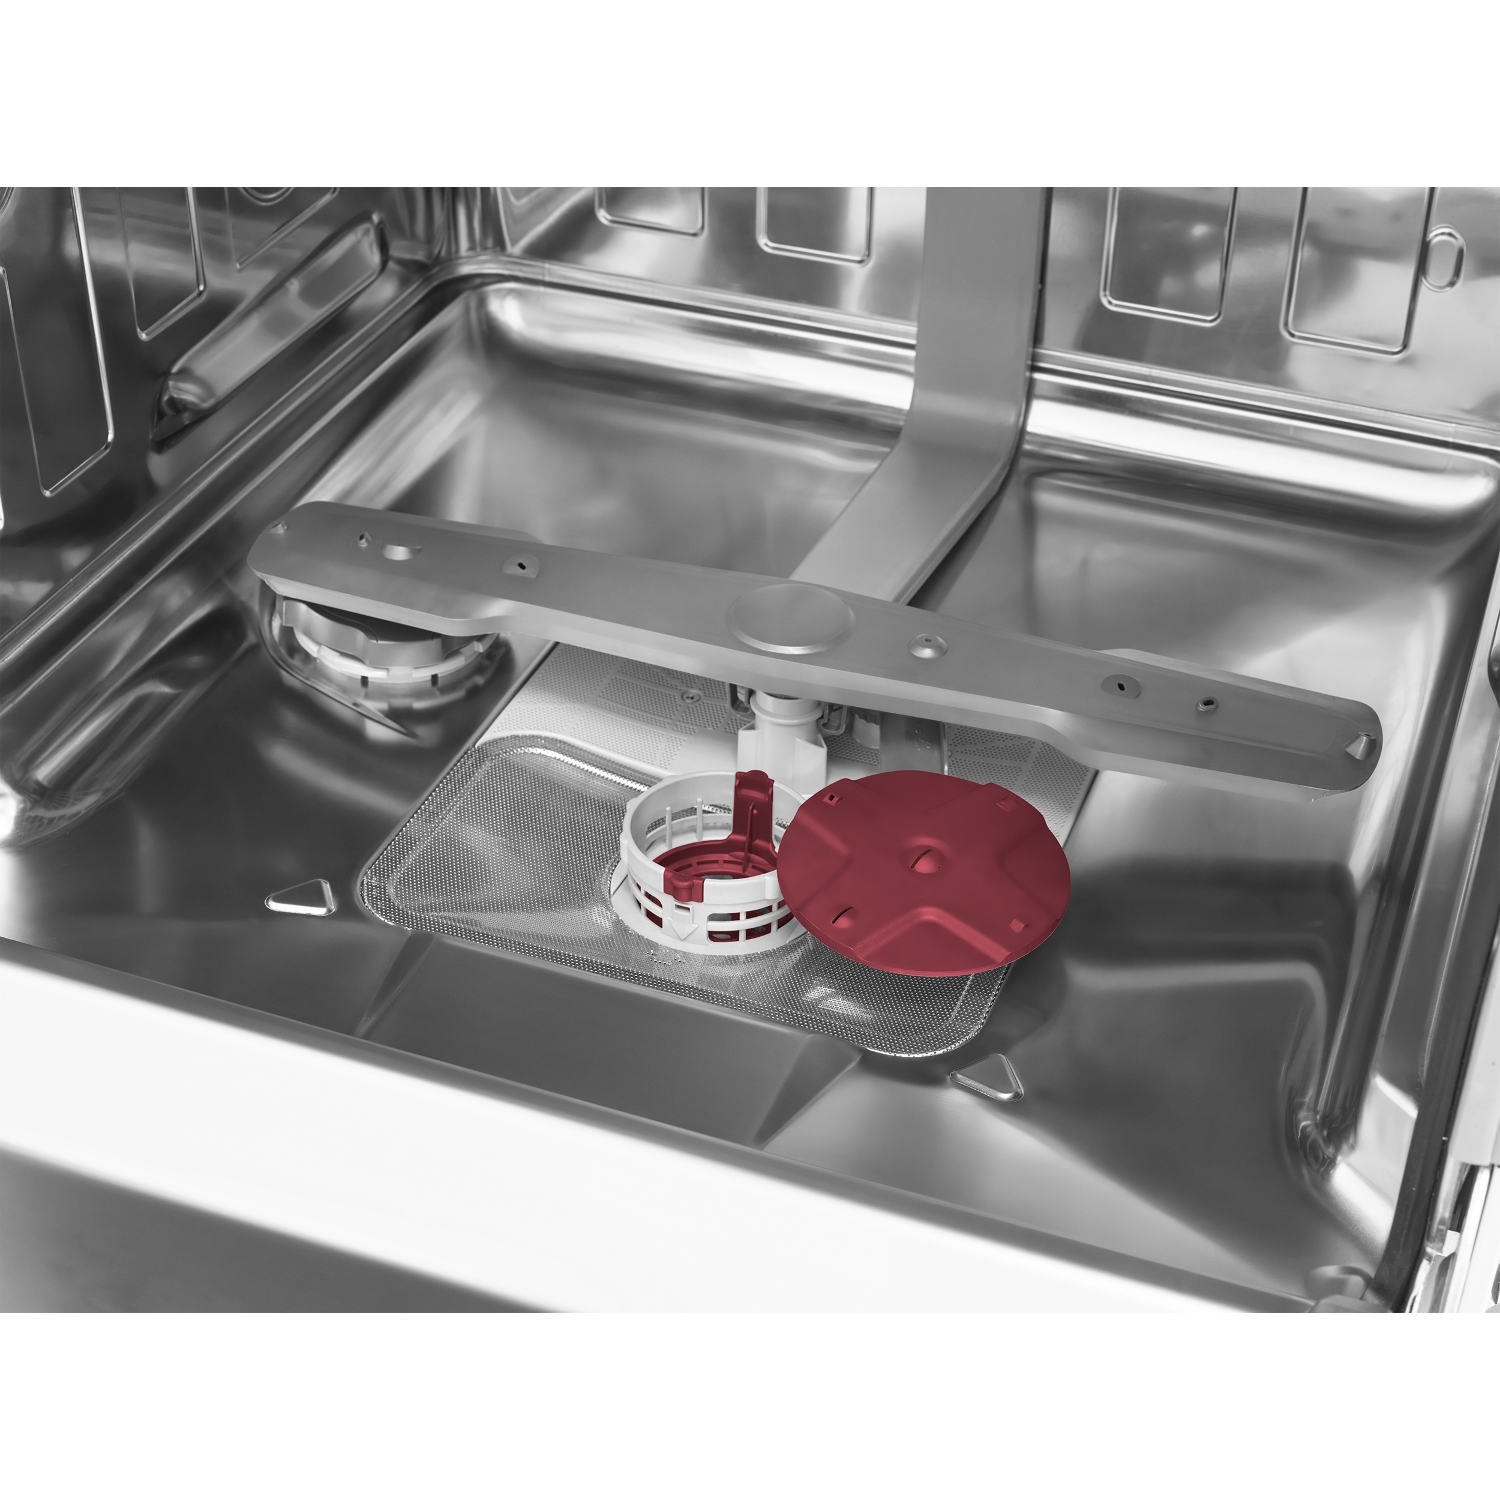 Blomberg LDV42244 Full Size Integrated Dishwasher - 14 Place Settings - 3